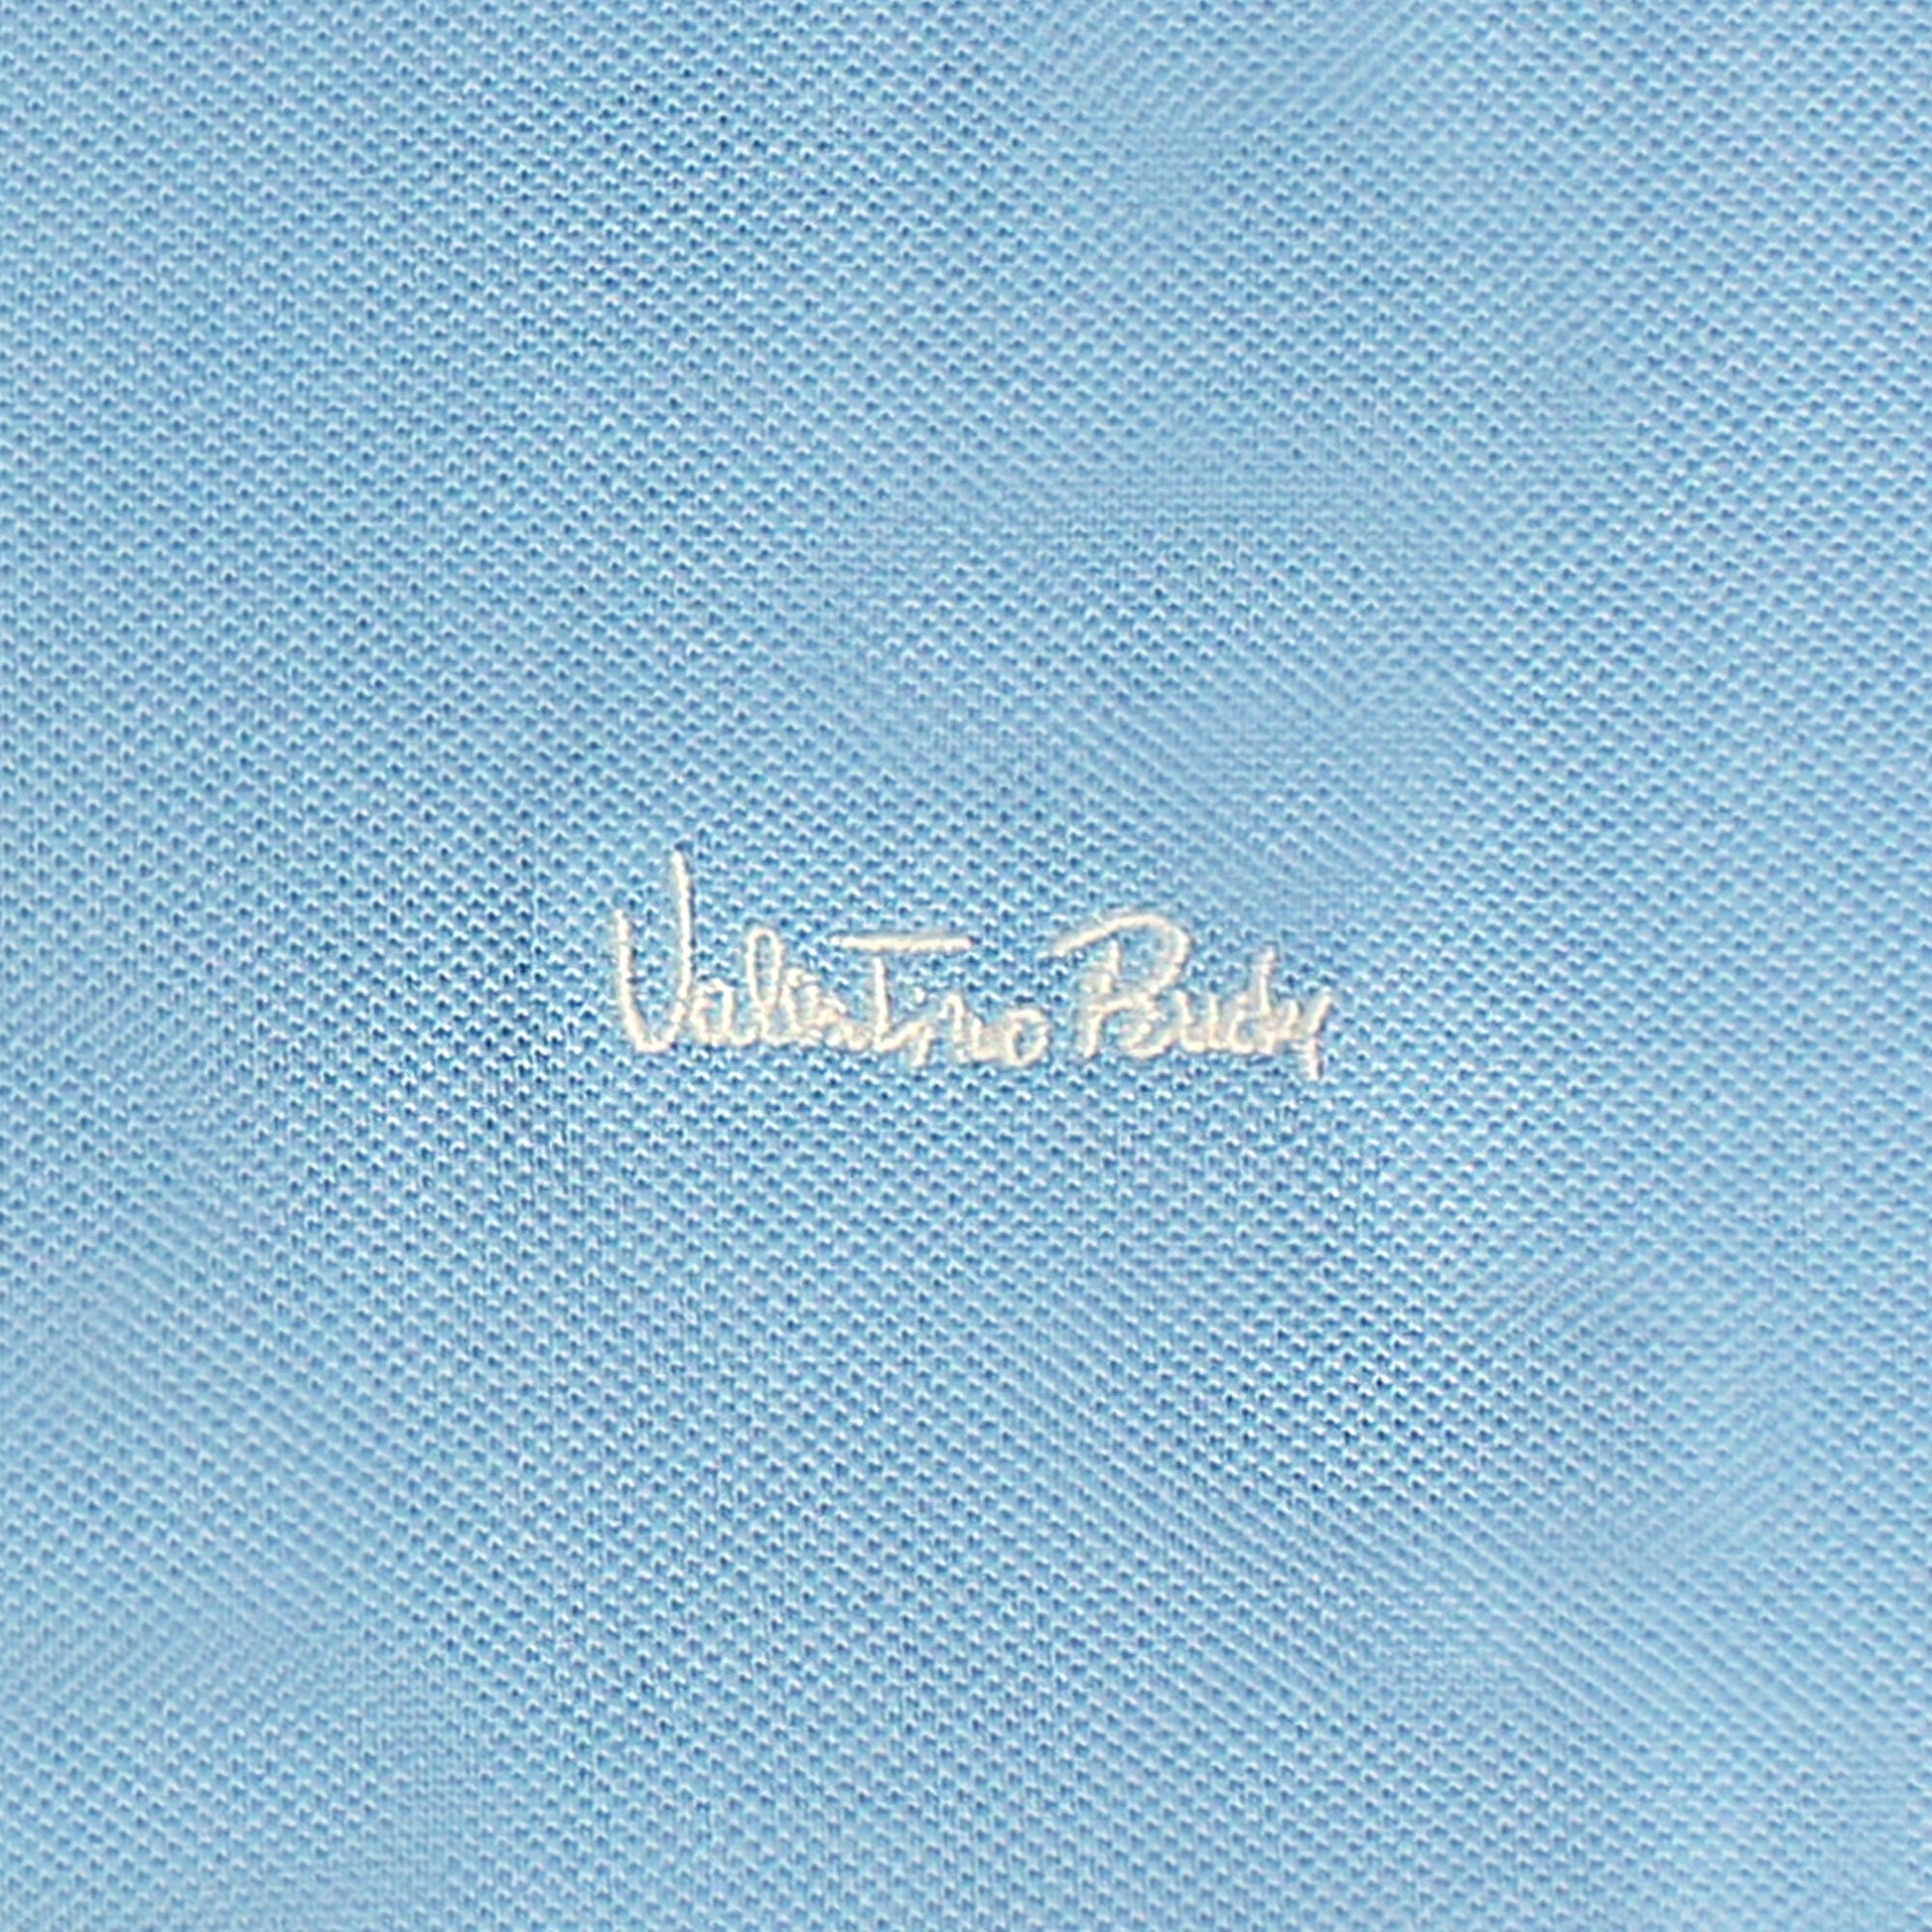 Valentino Rudy Italy Mens Polo Tee